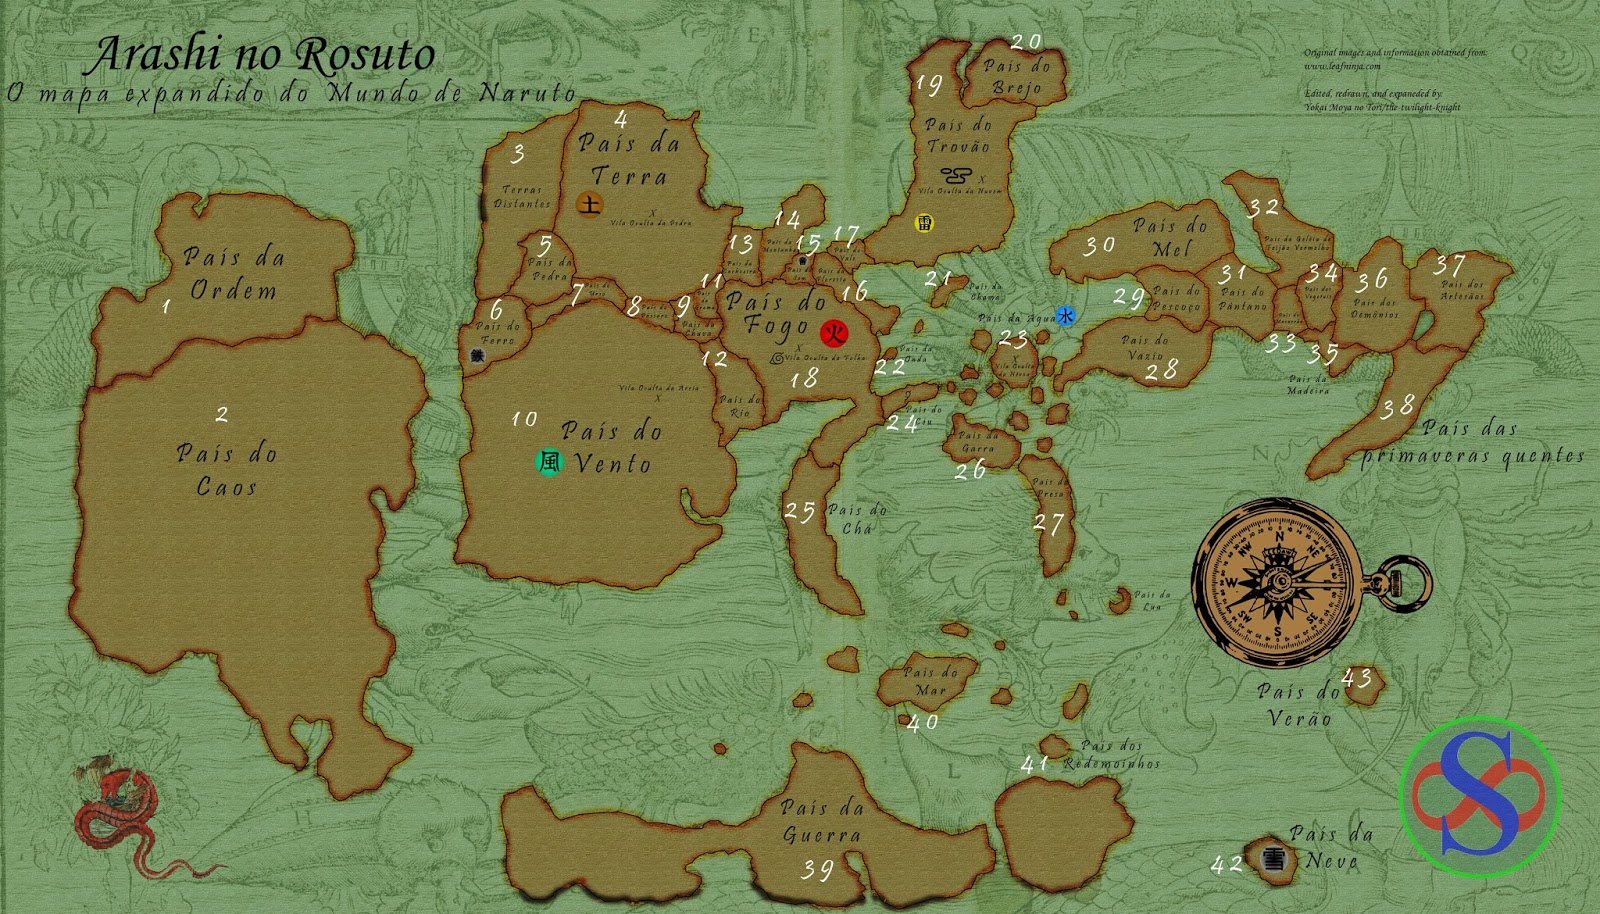 Conheça o Mapa Expandido do Mundo de Naruto